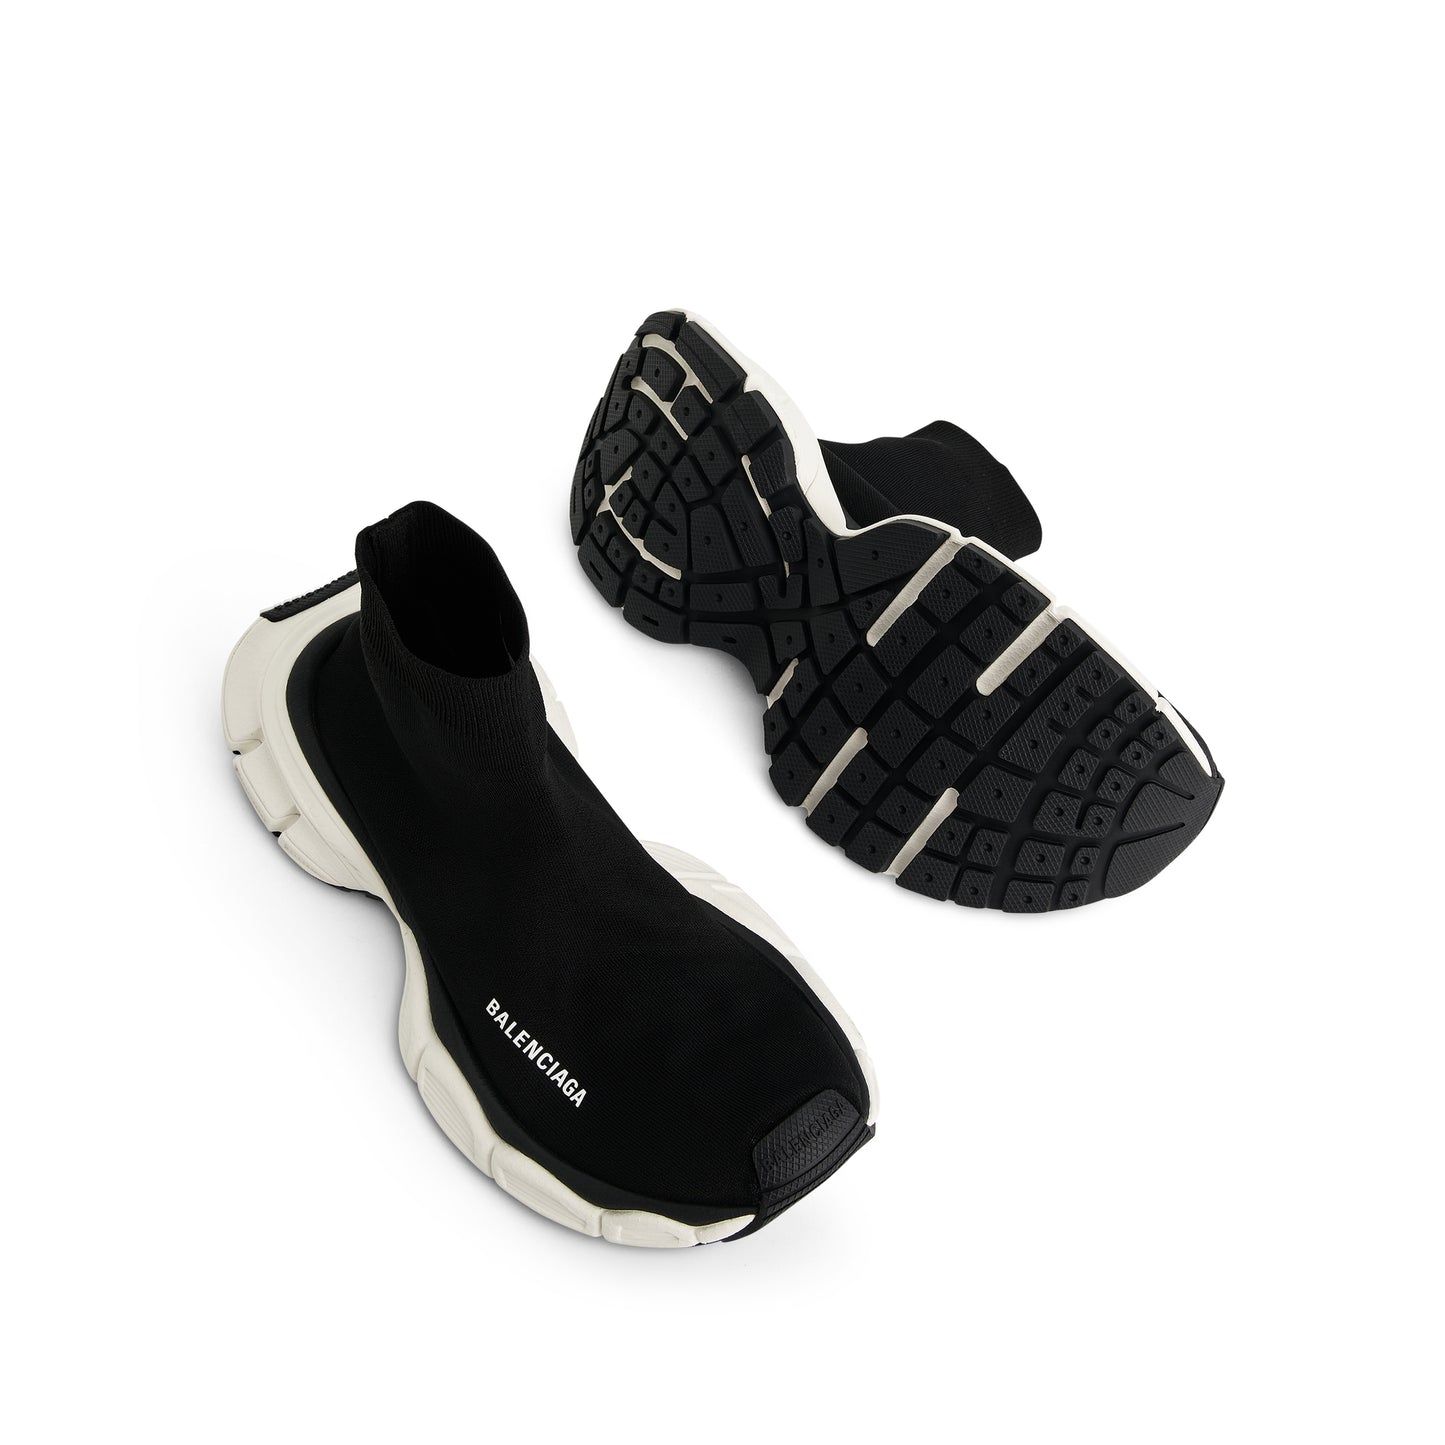 3XL Sock Sneaker in Black/White